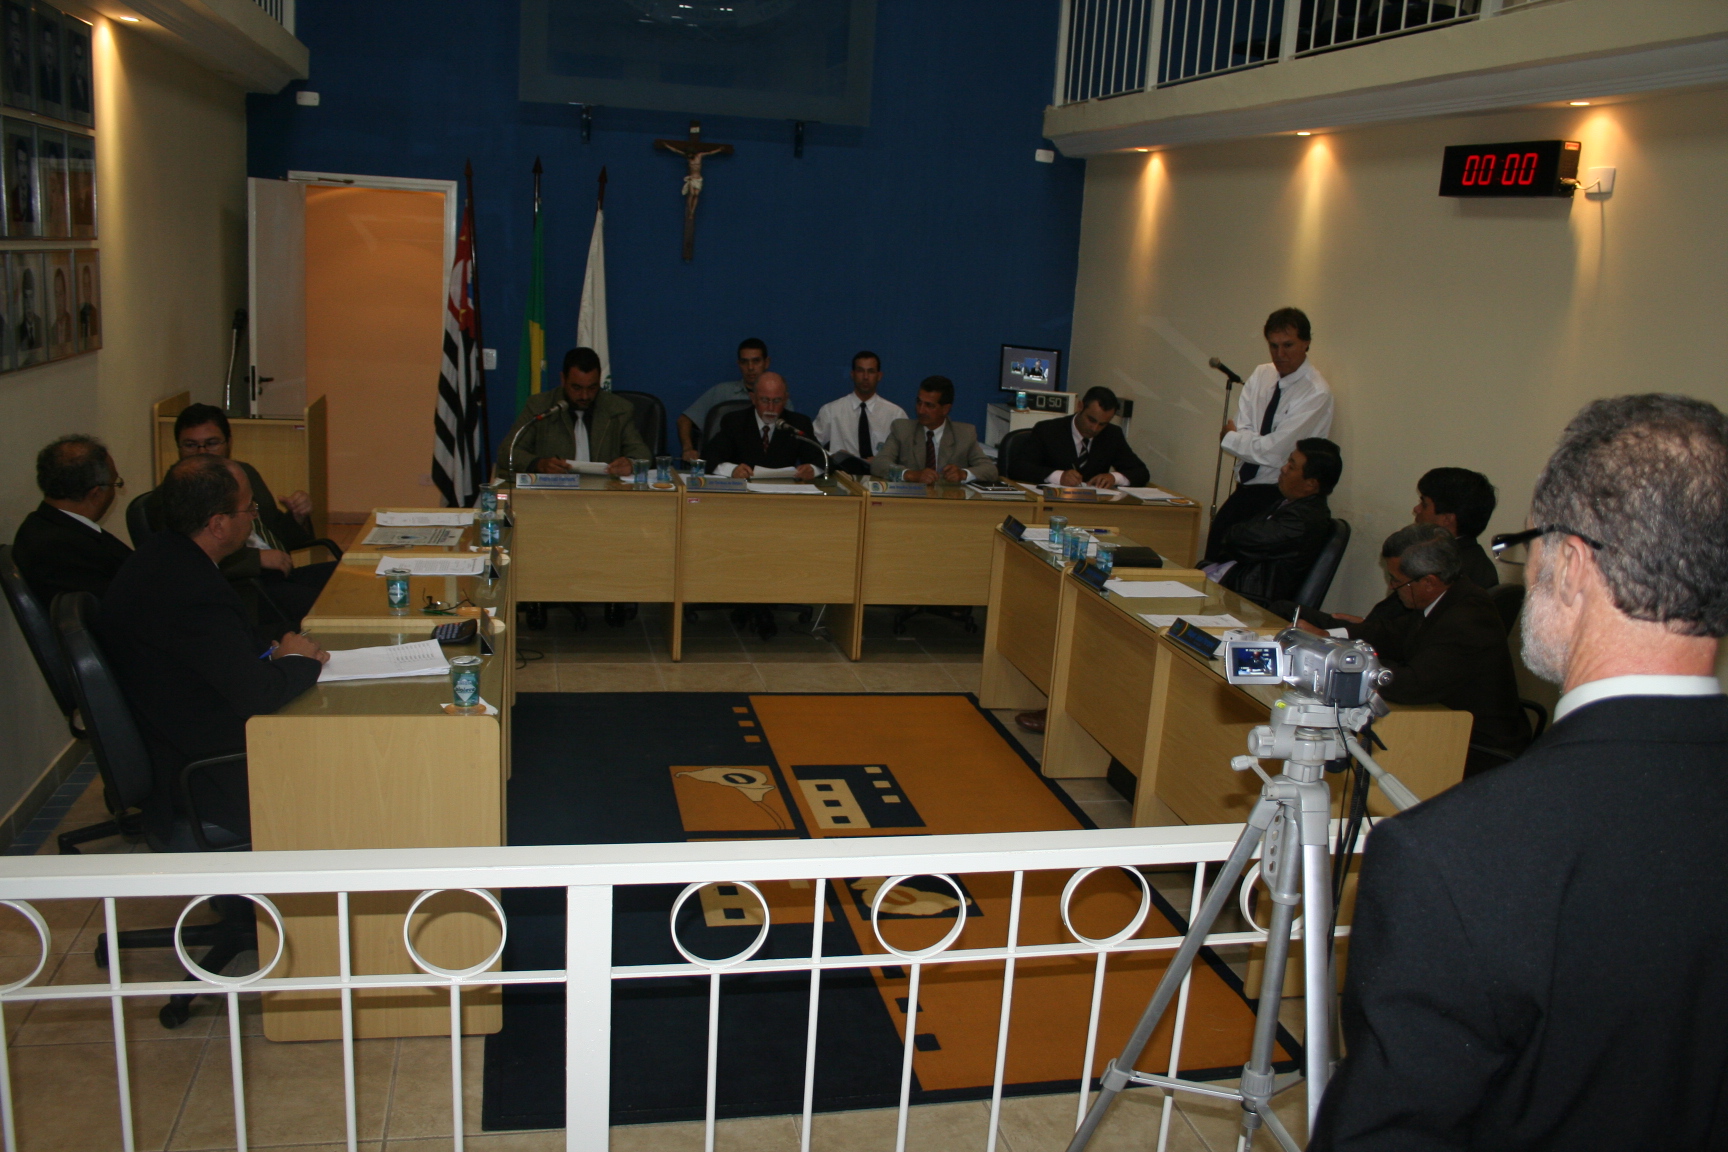 Momento histórico: sessão da Câmara Municipal de Ibiúna é transmitida ao vivo pela primeira vez